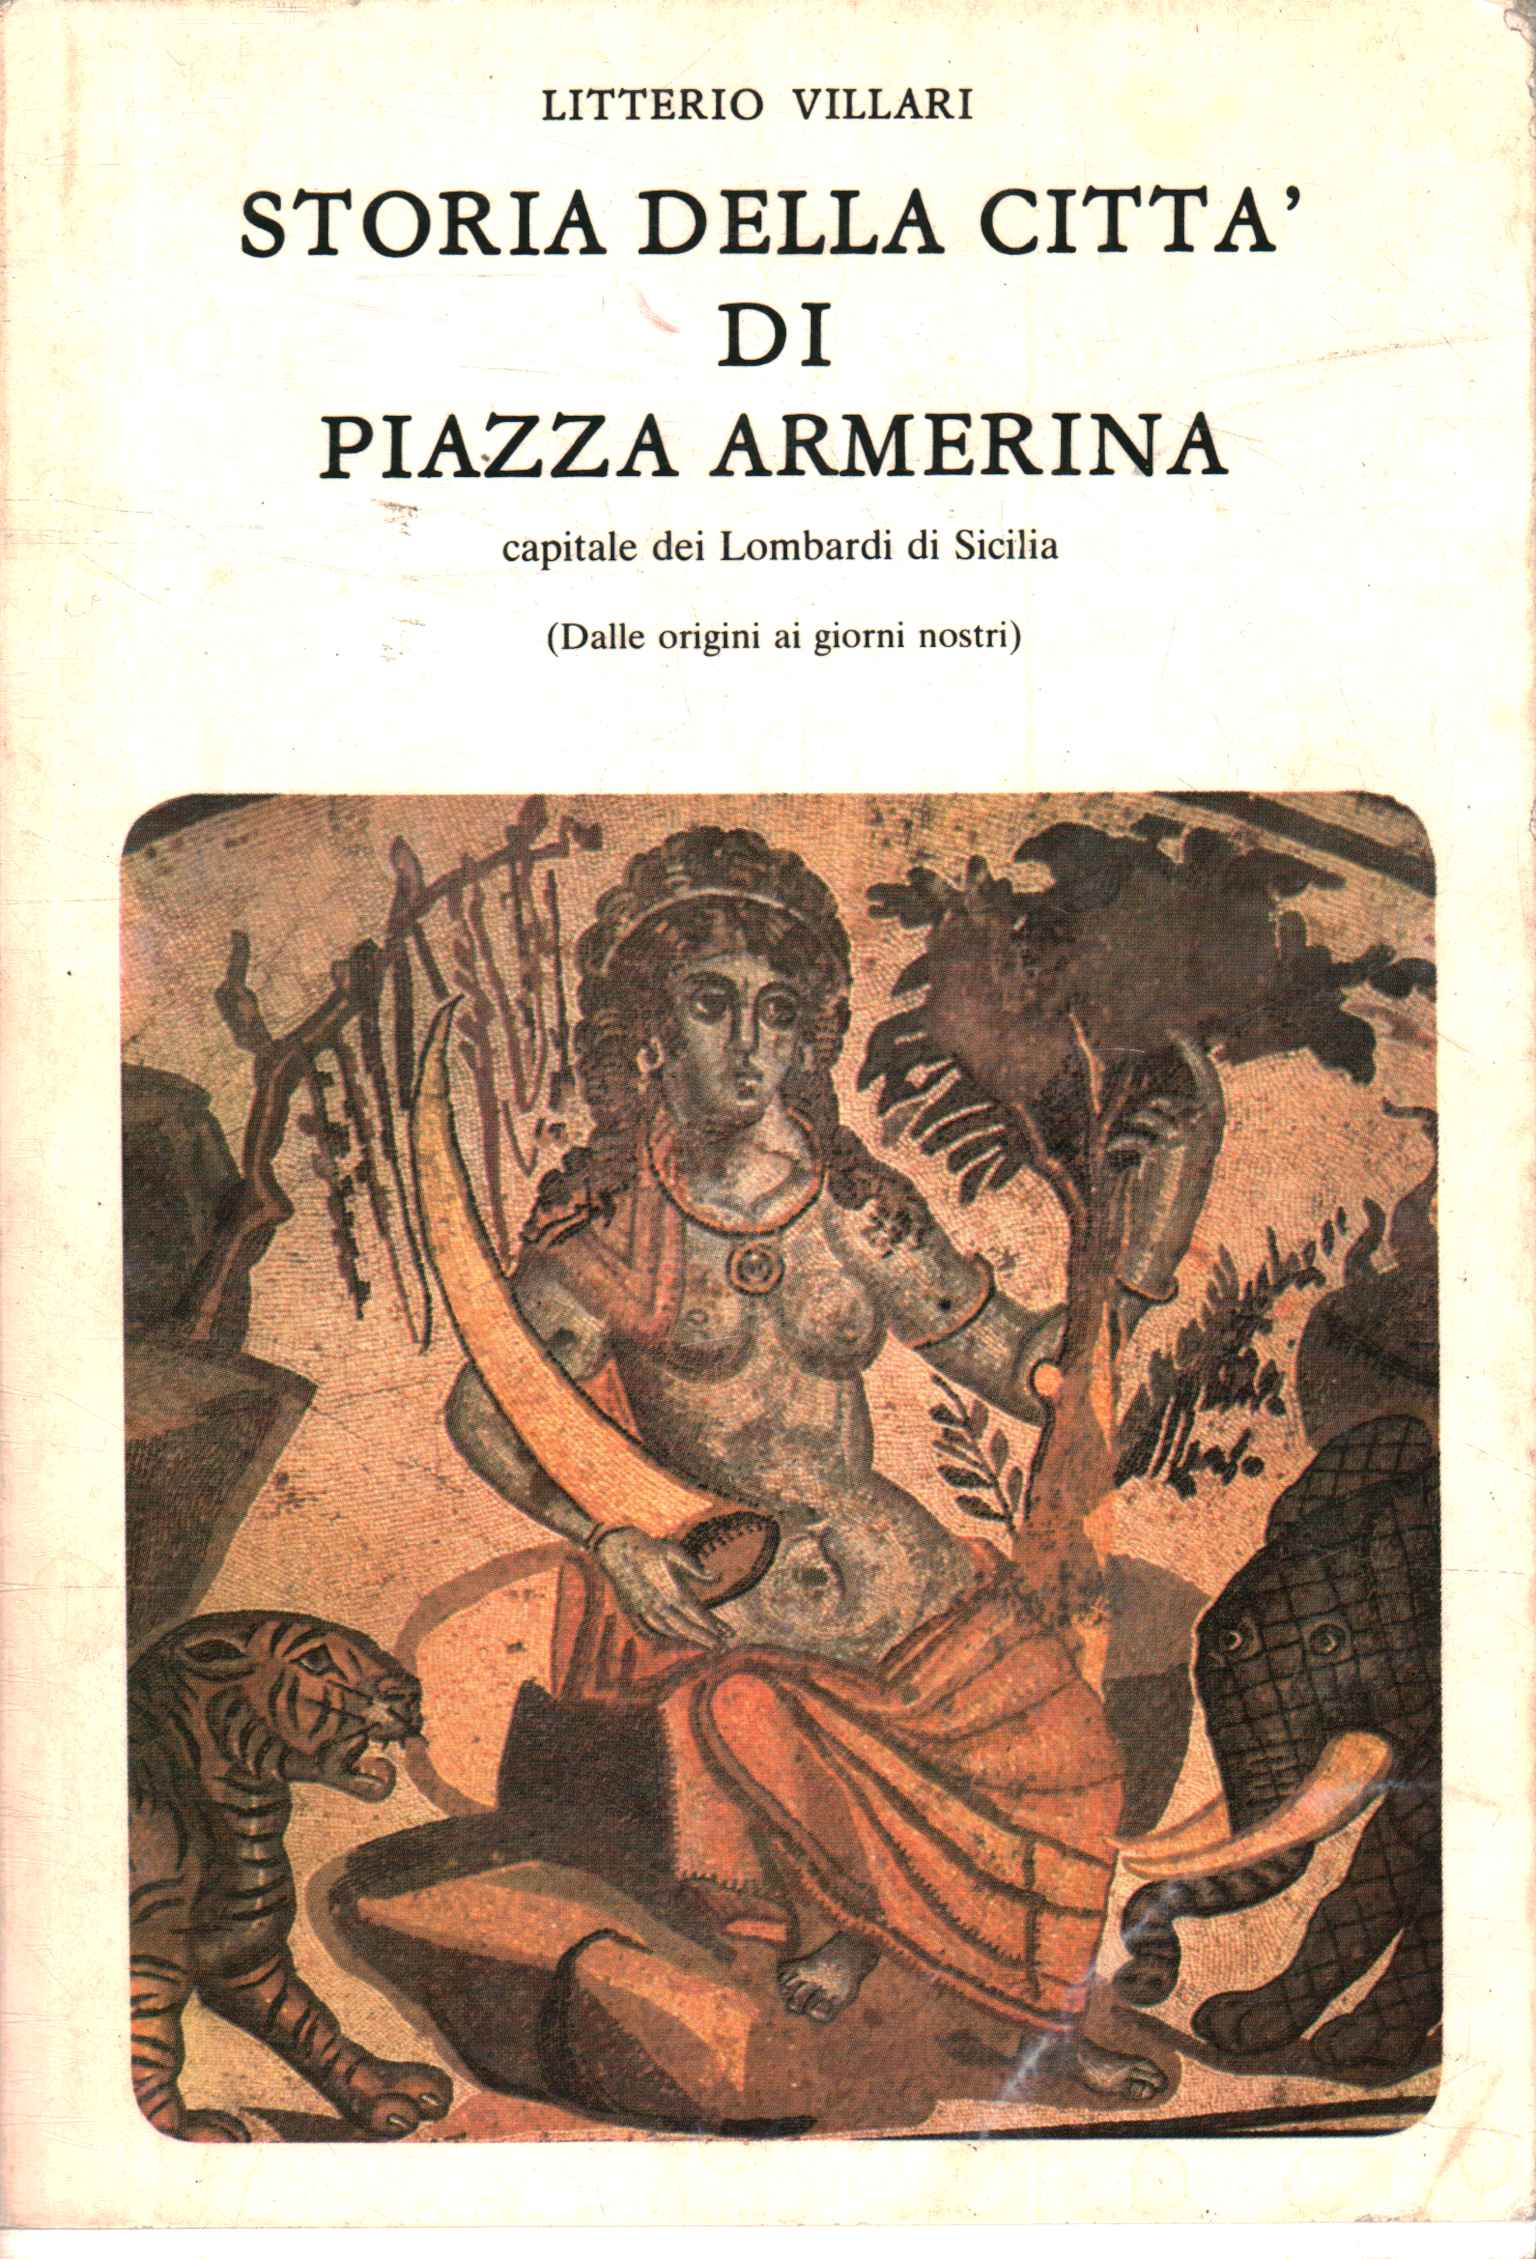 Histoire de la ville de Piazza Armeri